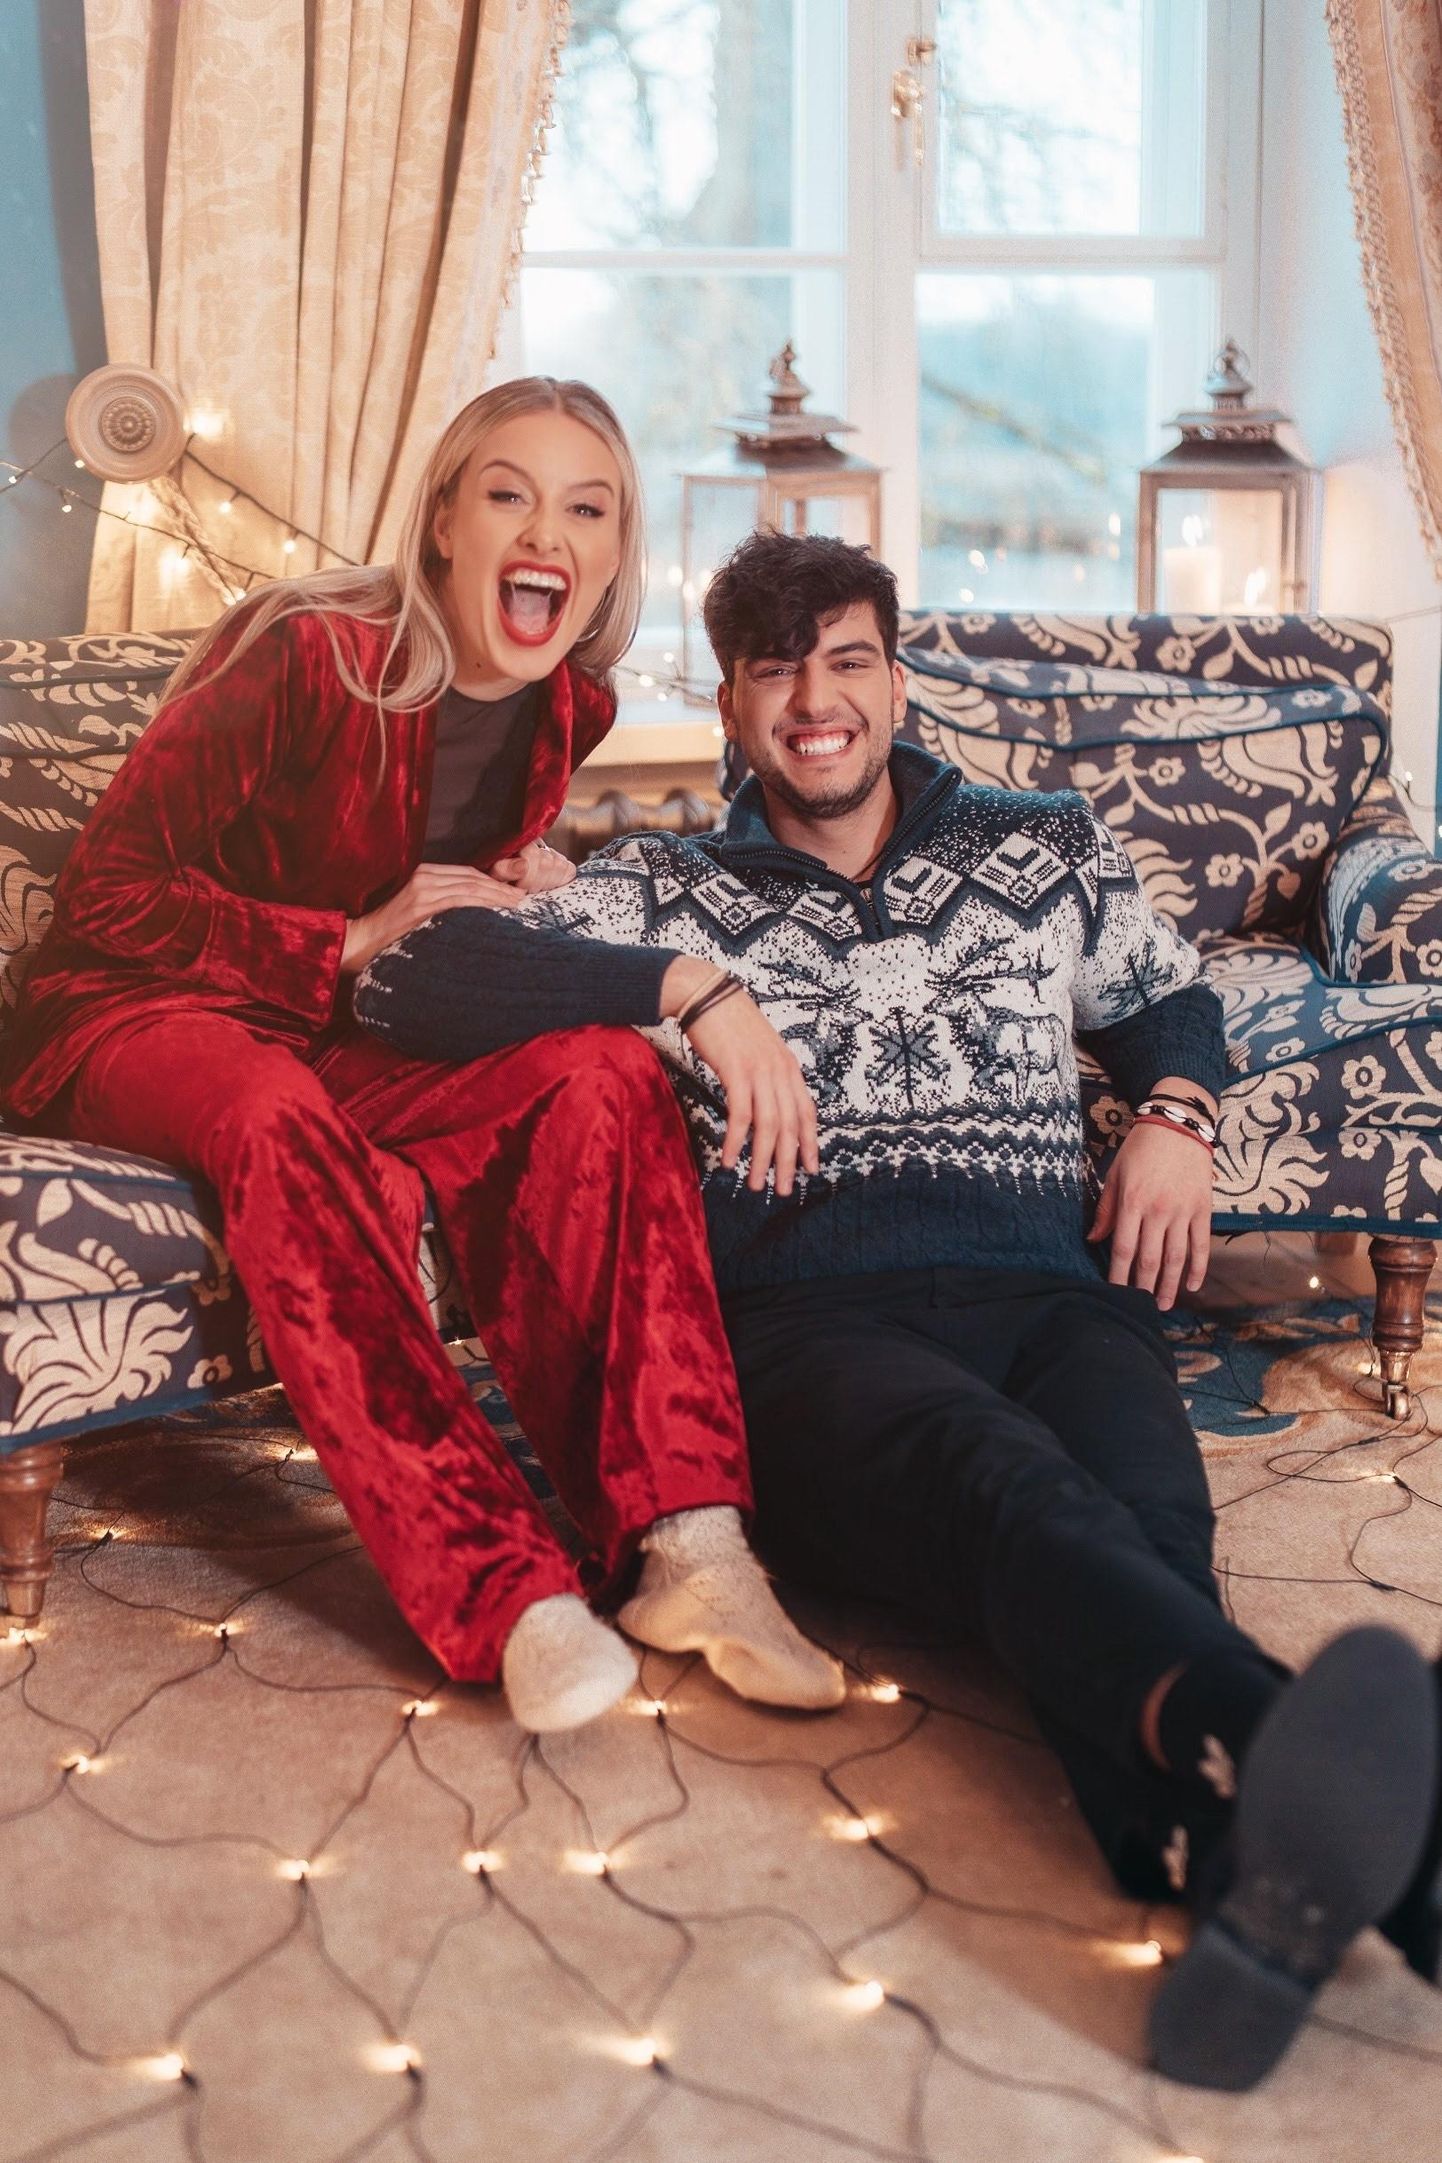 Stefan ja Eleryn soovivad lauluvideoga kuulajatele ilusat jõuluaega.